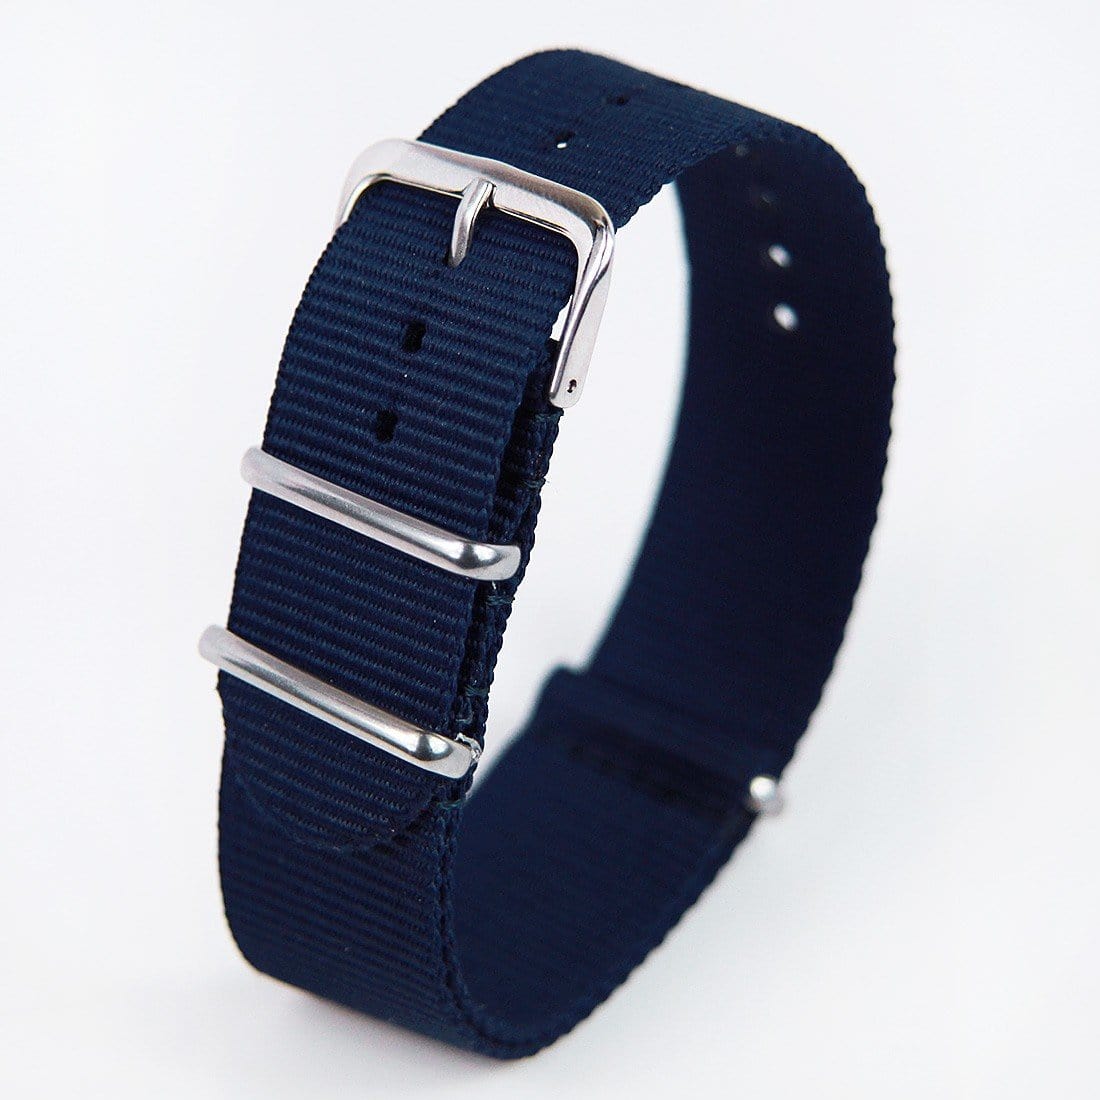 Seiko Automatic 200m Watch SKX007J SKX007J1 with Extra Nylon Bracelet